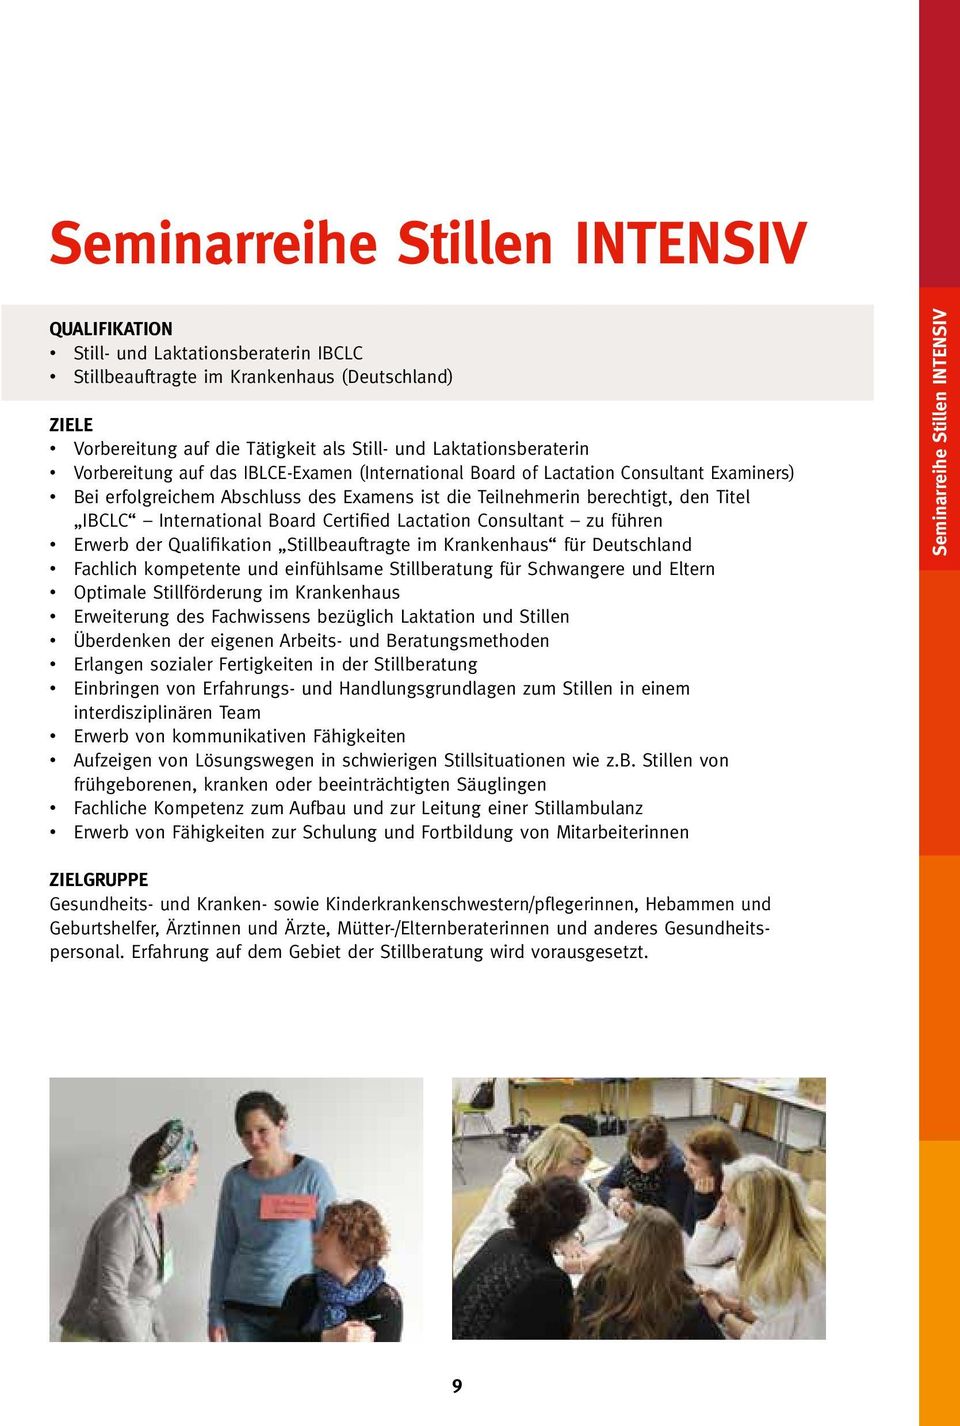 Certified Lactation Consultant zu führen Erwerb der Qualifikation Stillbeauftragte im Krankenhaus für Deutschland Fachlich kompetente und einfühlsame Stillberatung für Schwangere und Eltern Optimale